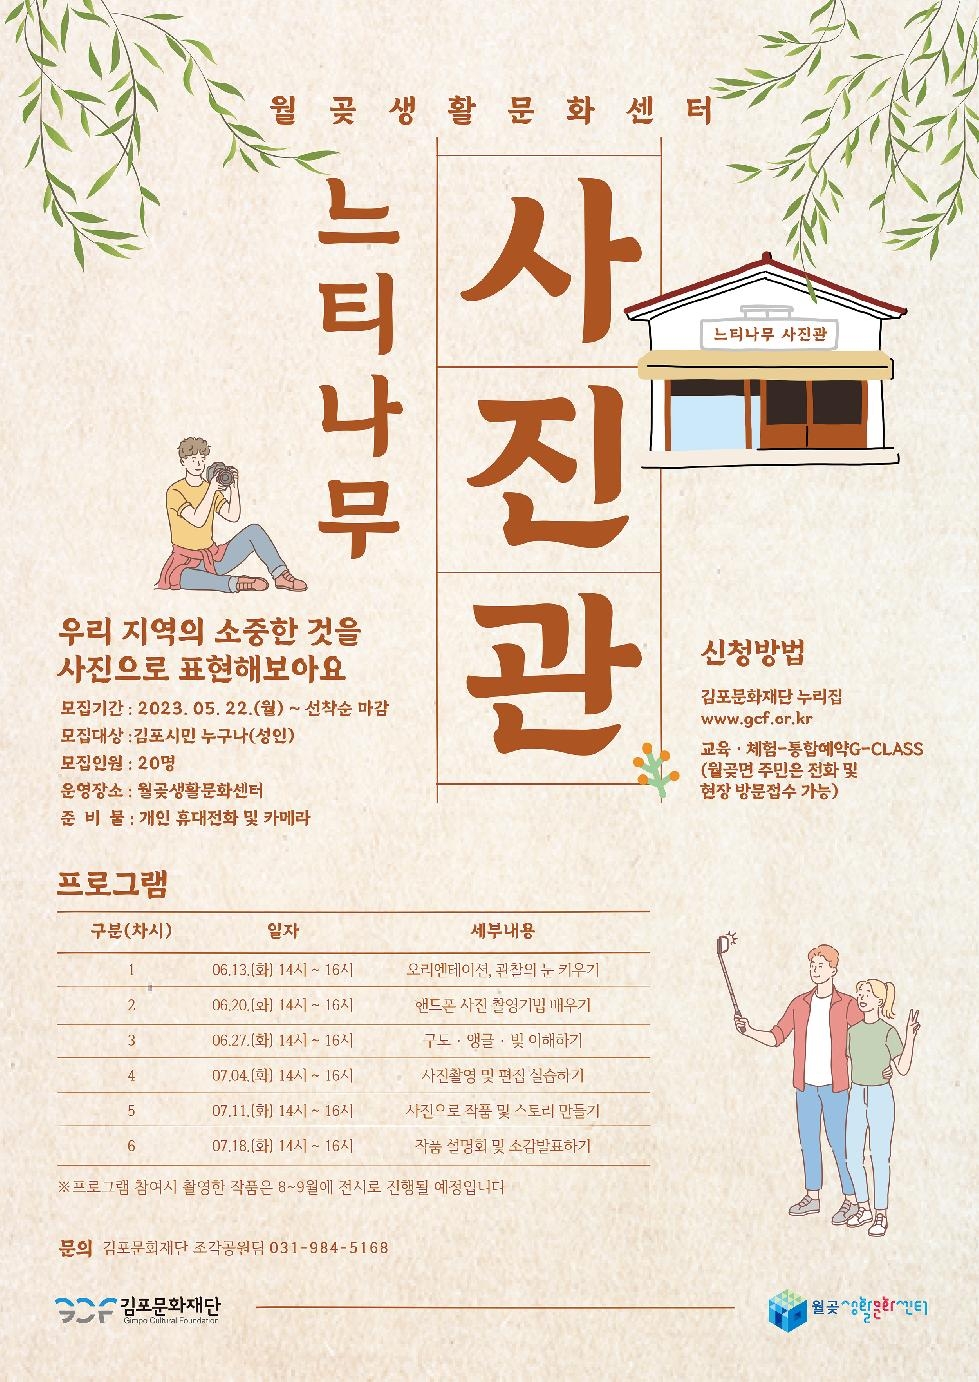 김포시 월곶생활문화센터 [느티나무 사진관] 참여자 모집